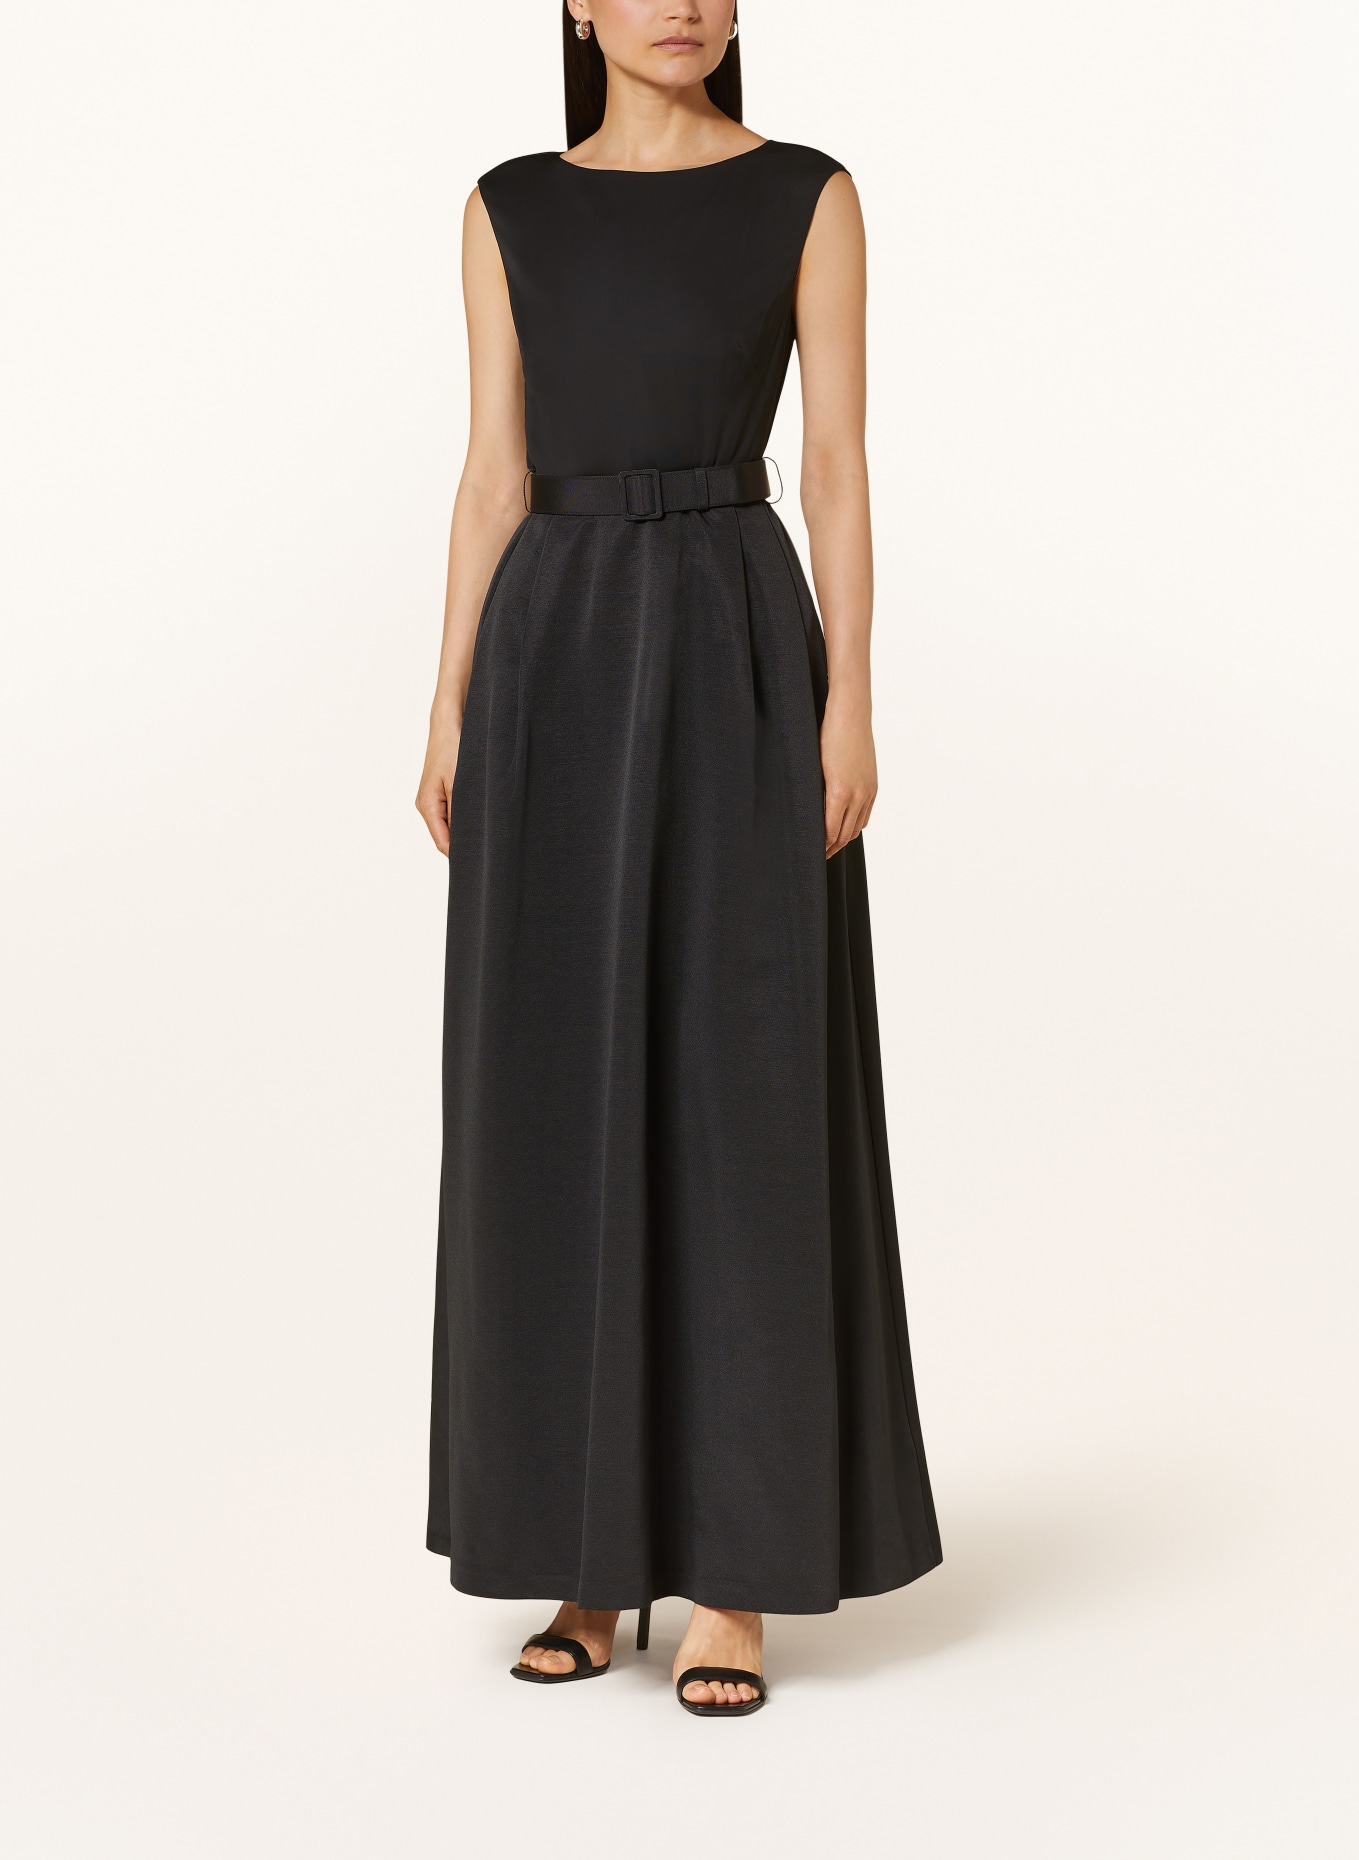 LAUREN RALPH LAUREN Evening dress NOELLA in mixed materials , Color: BLACK (Image 2)